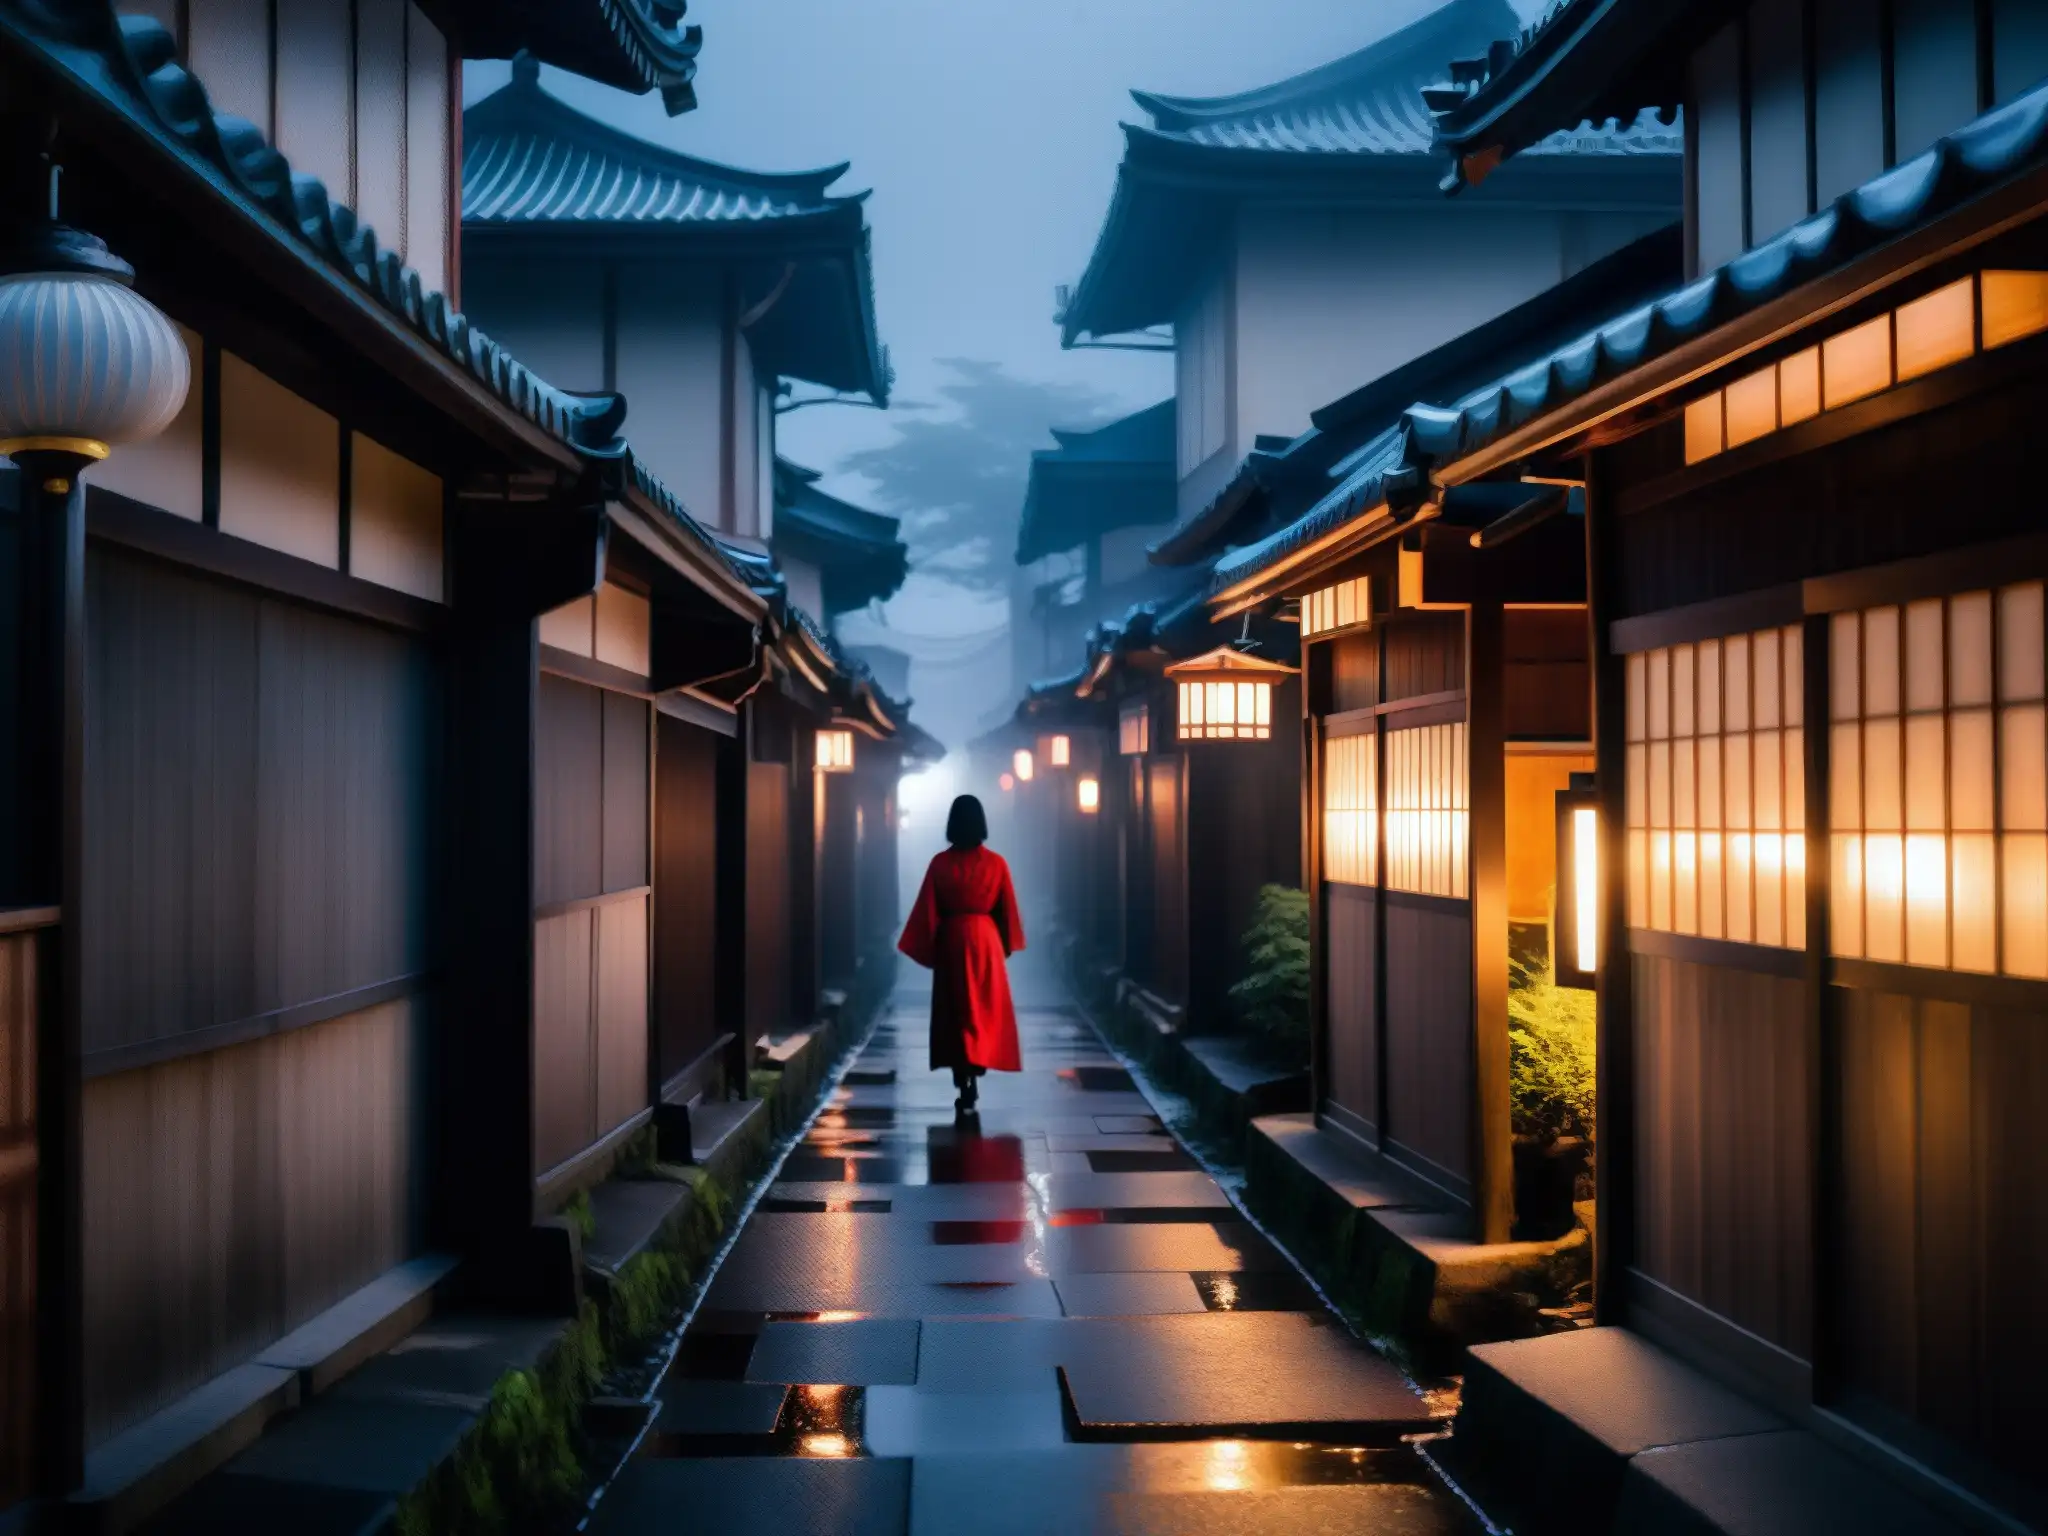 Un oscuro callejón japonés con la figura borrosa de TekeTeke, creando una atmósfera inquietante